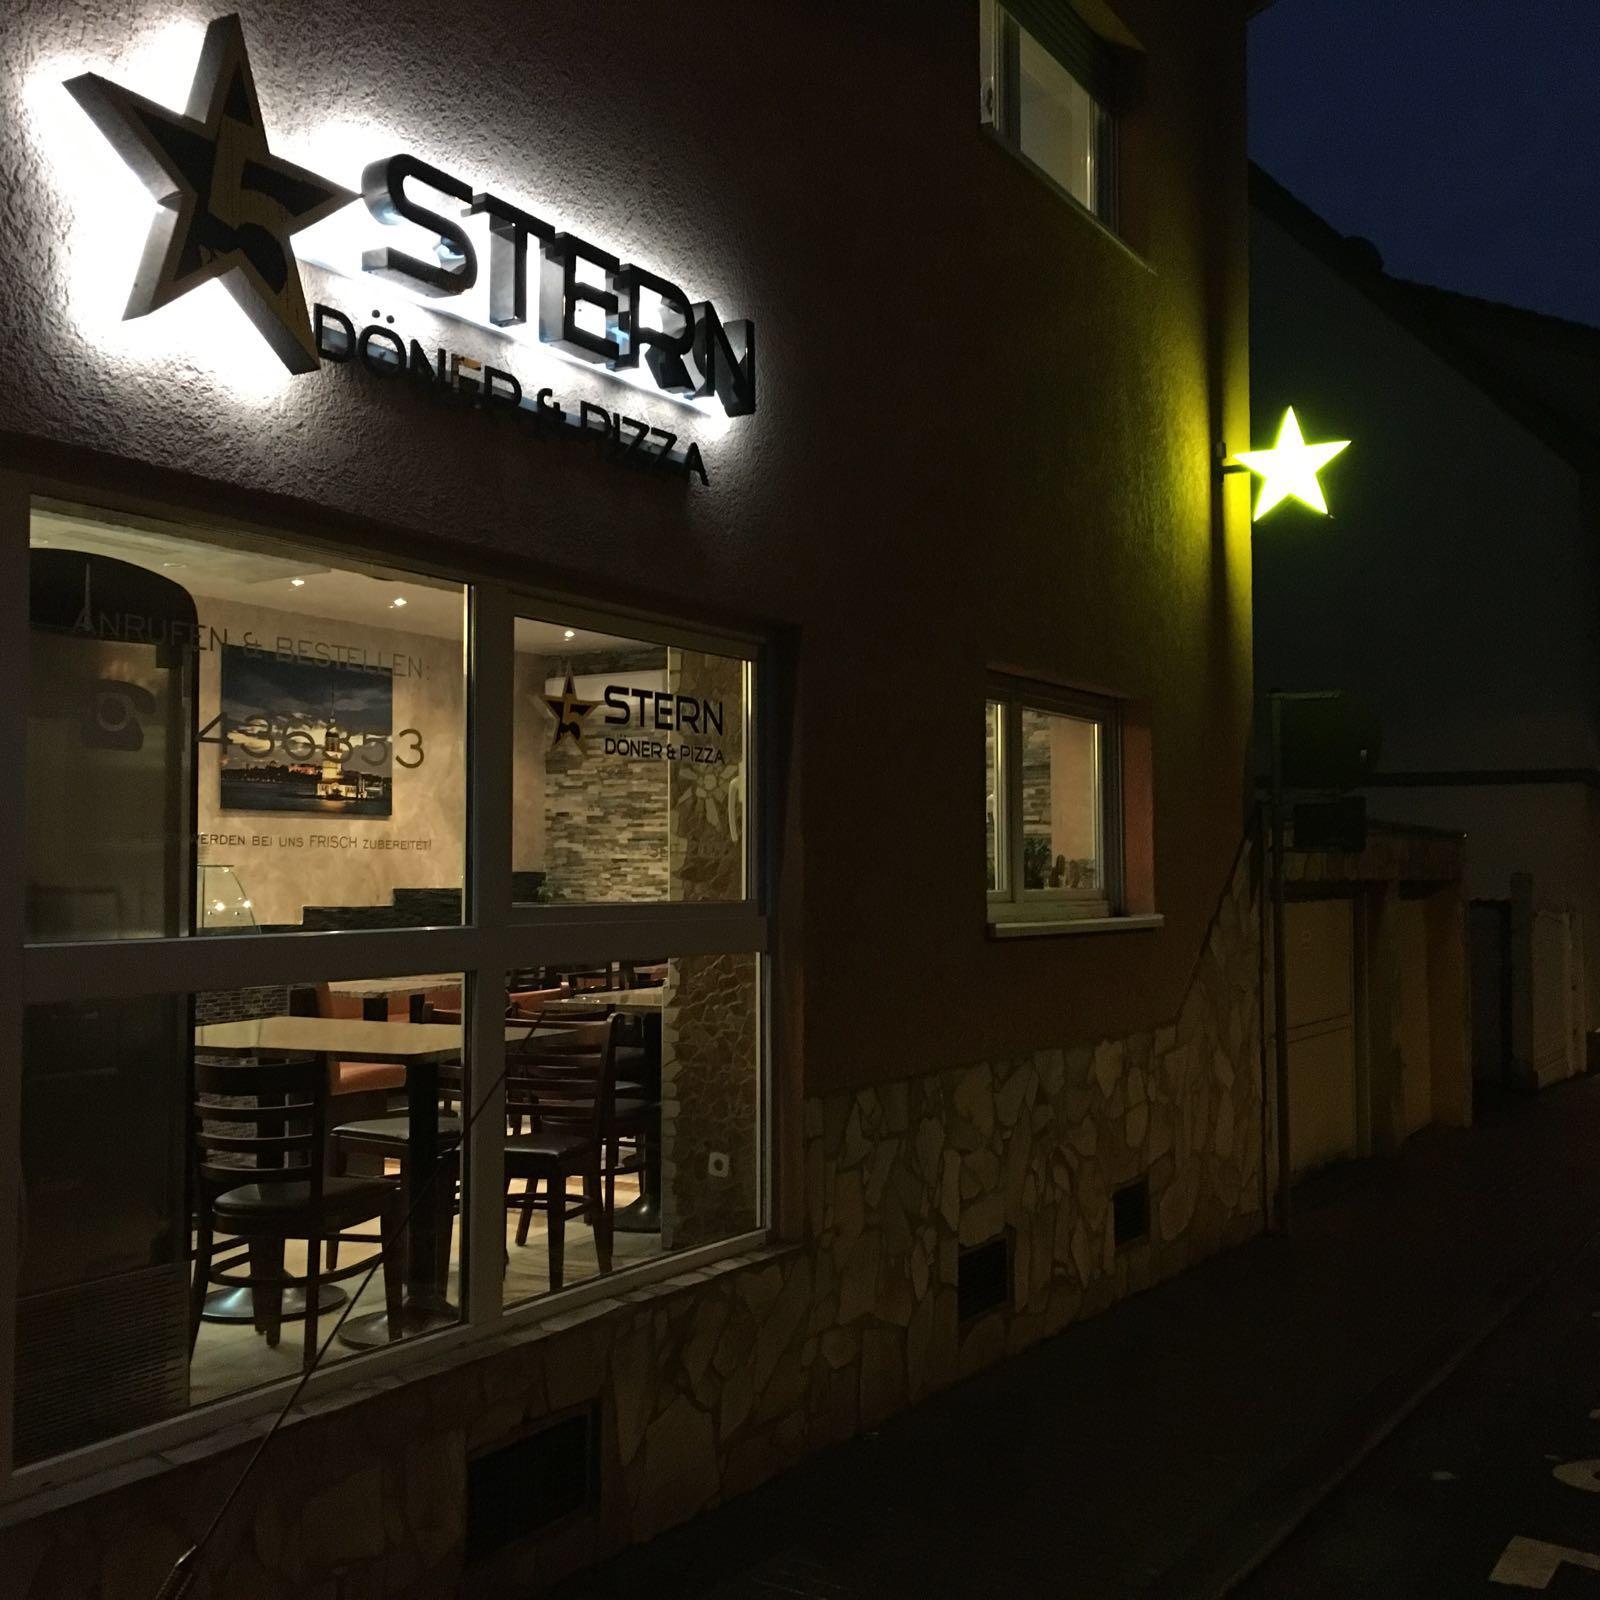 Restaurant "Stern Döner" in Mainz